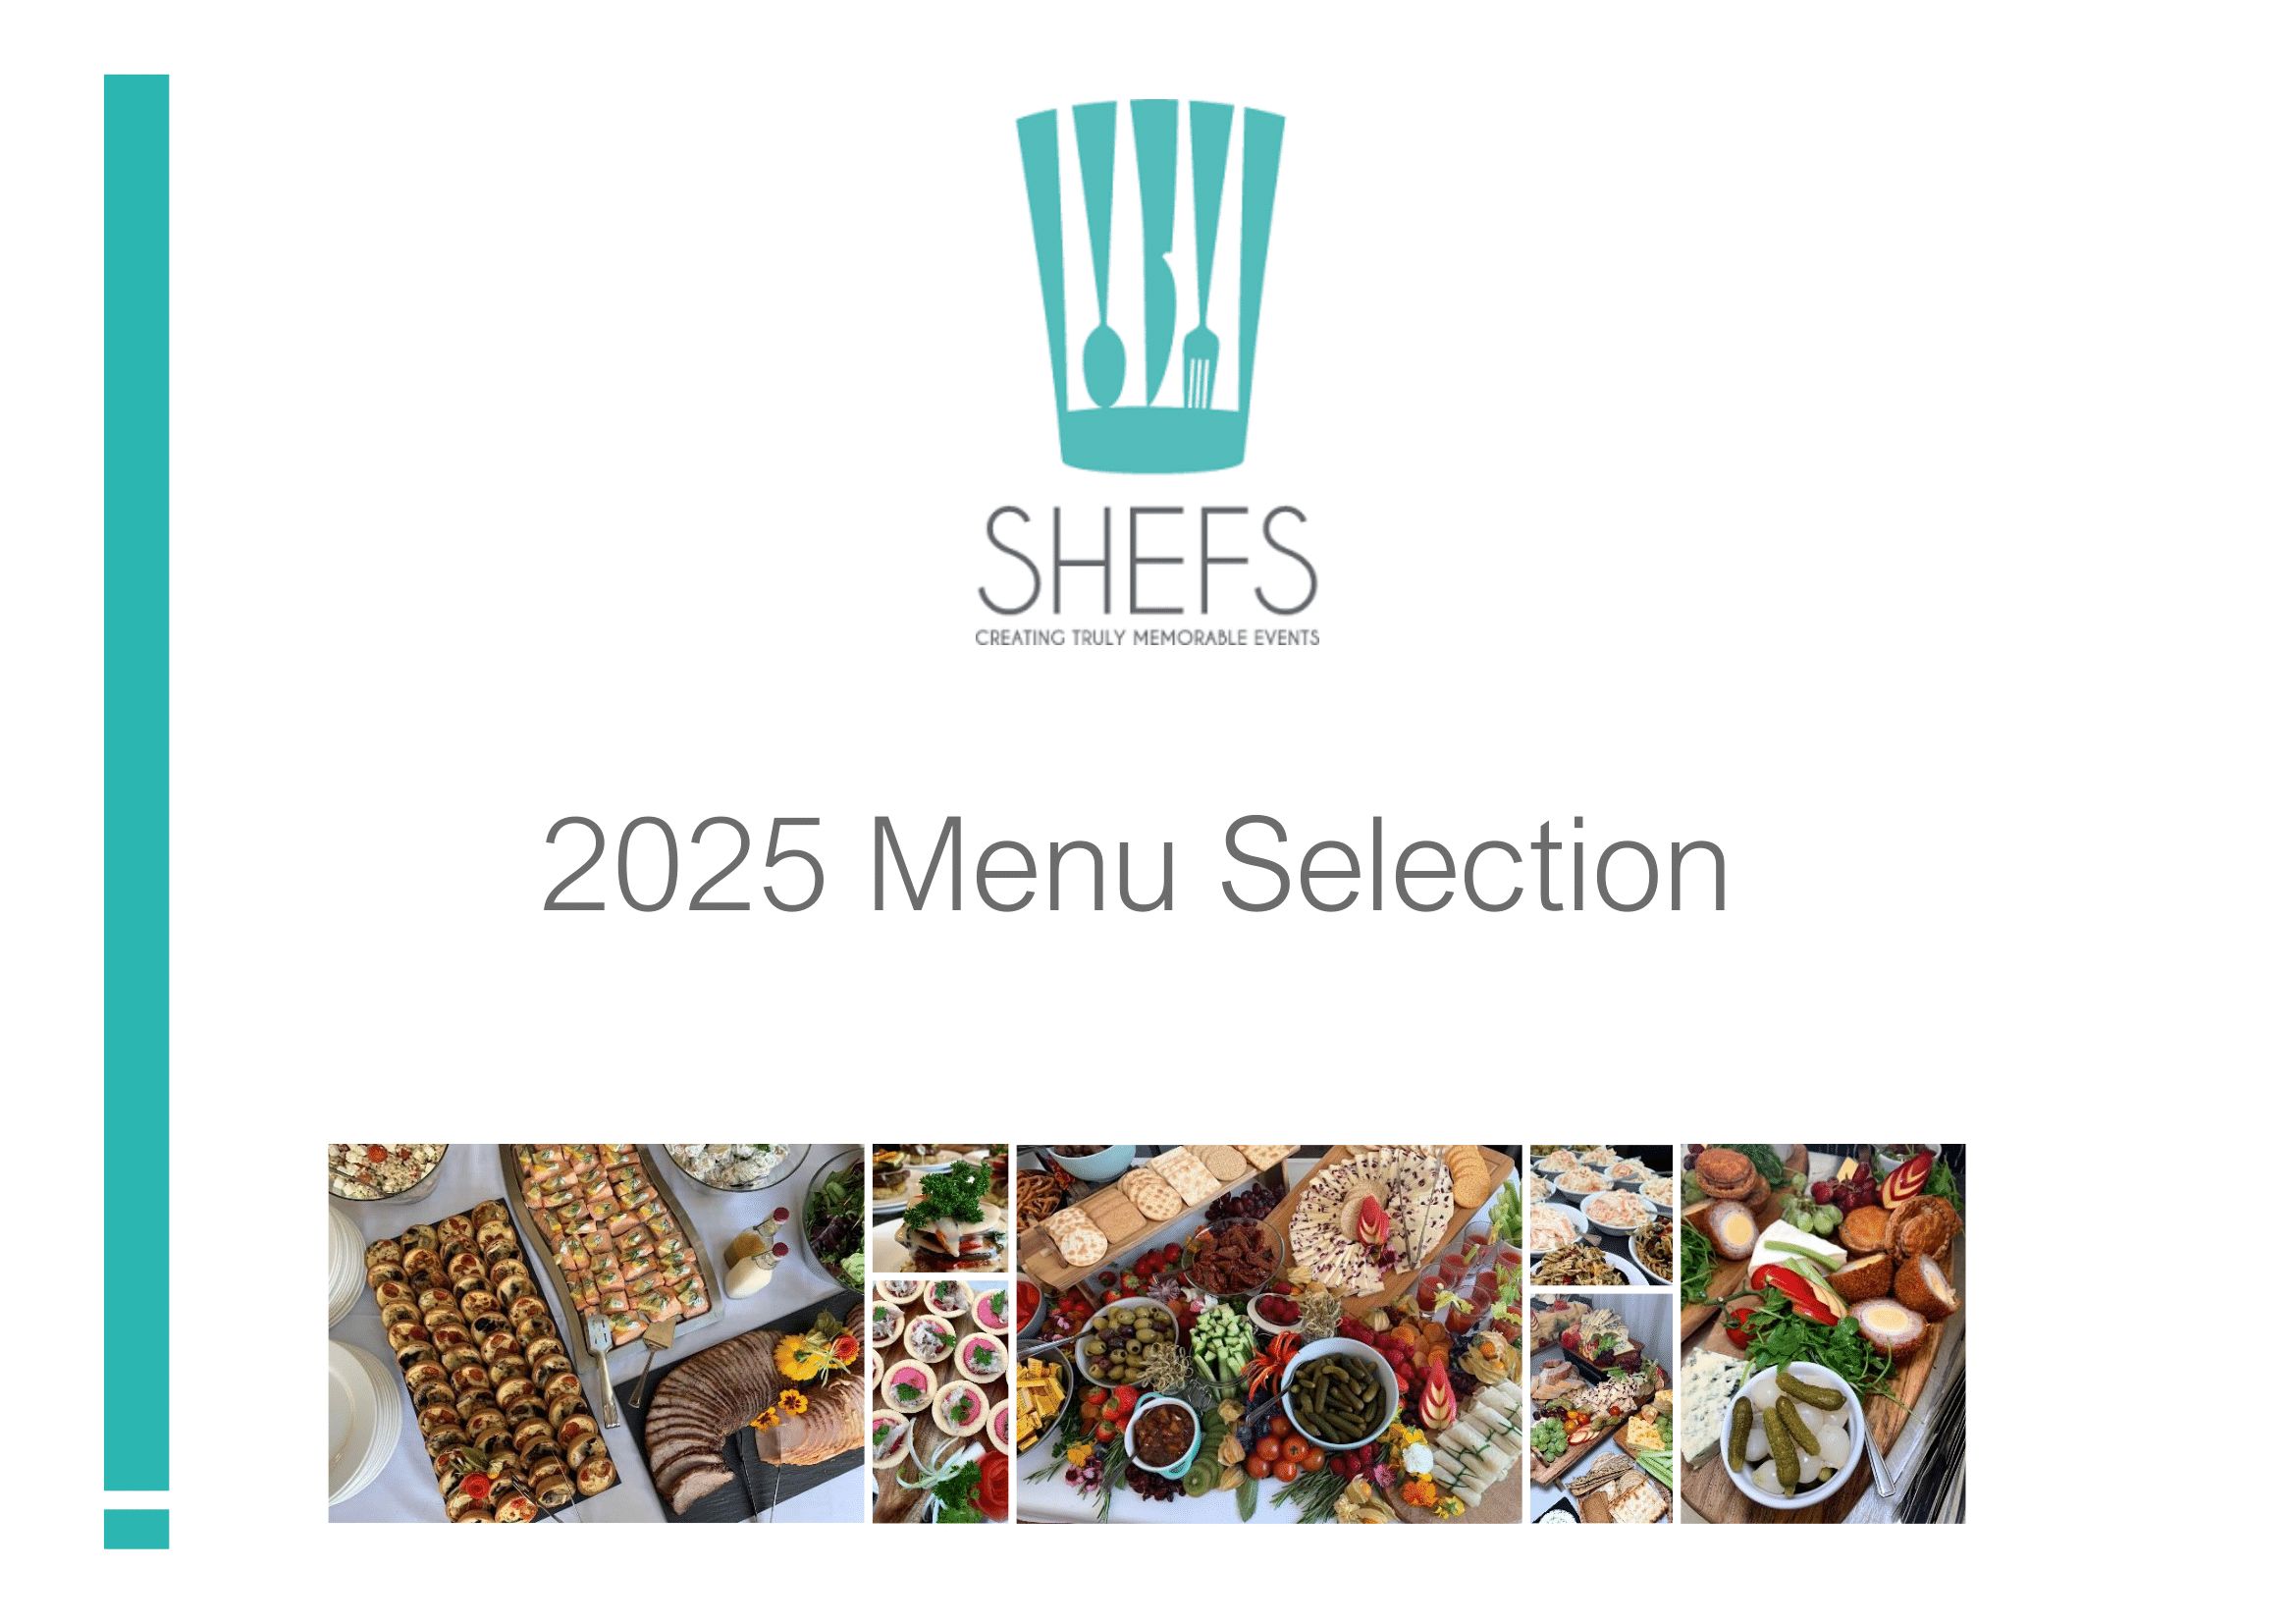 Shefs sample menus